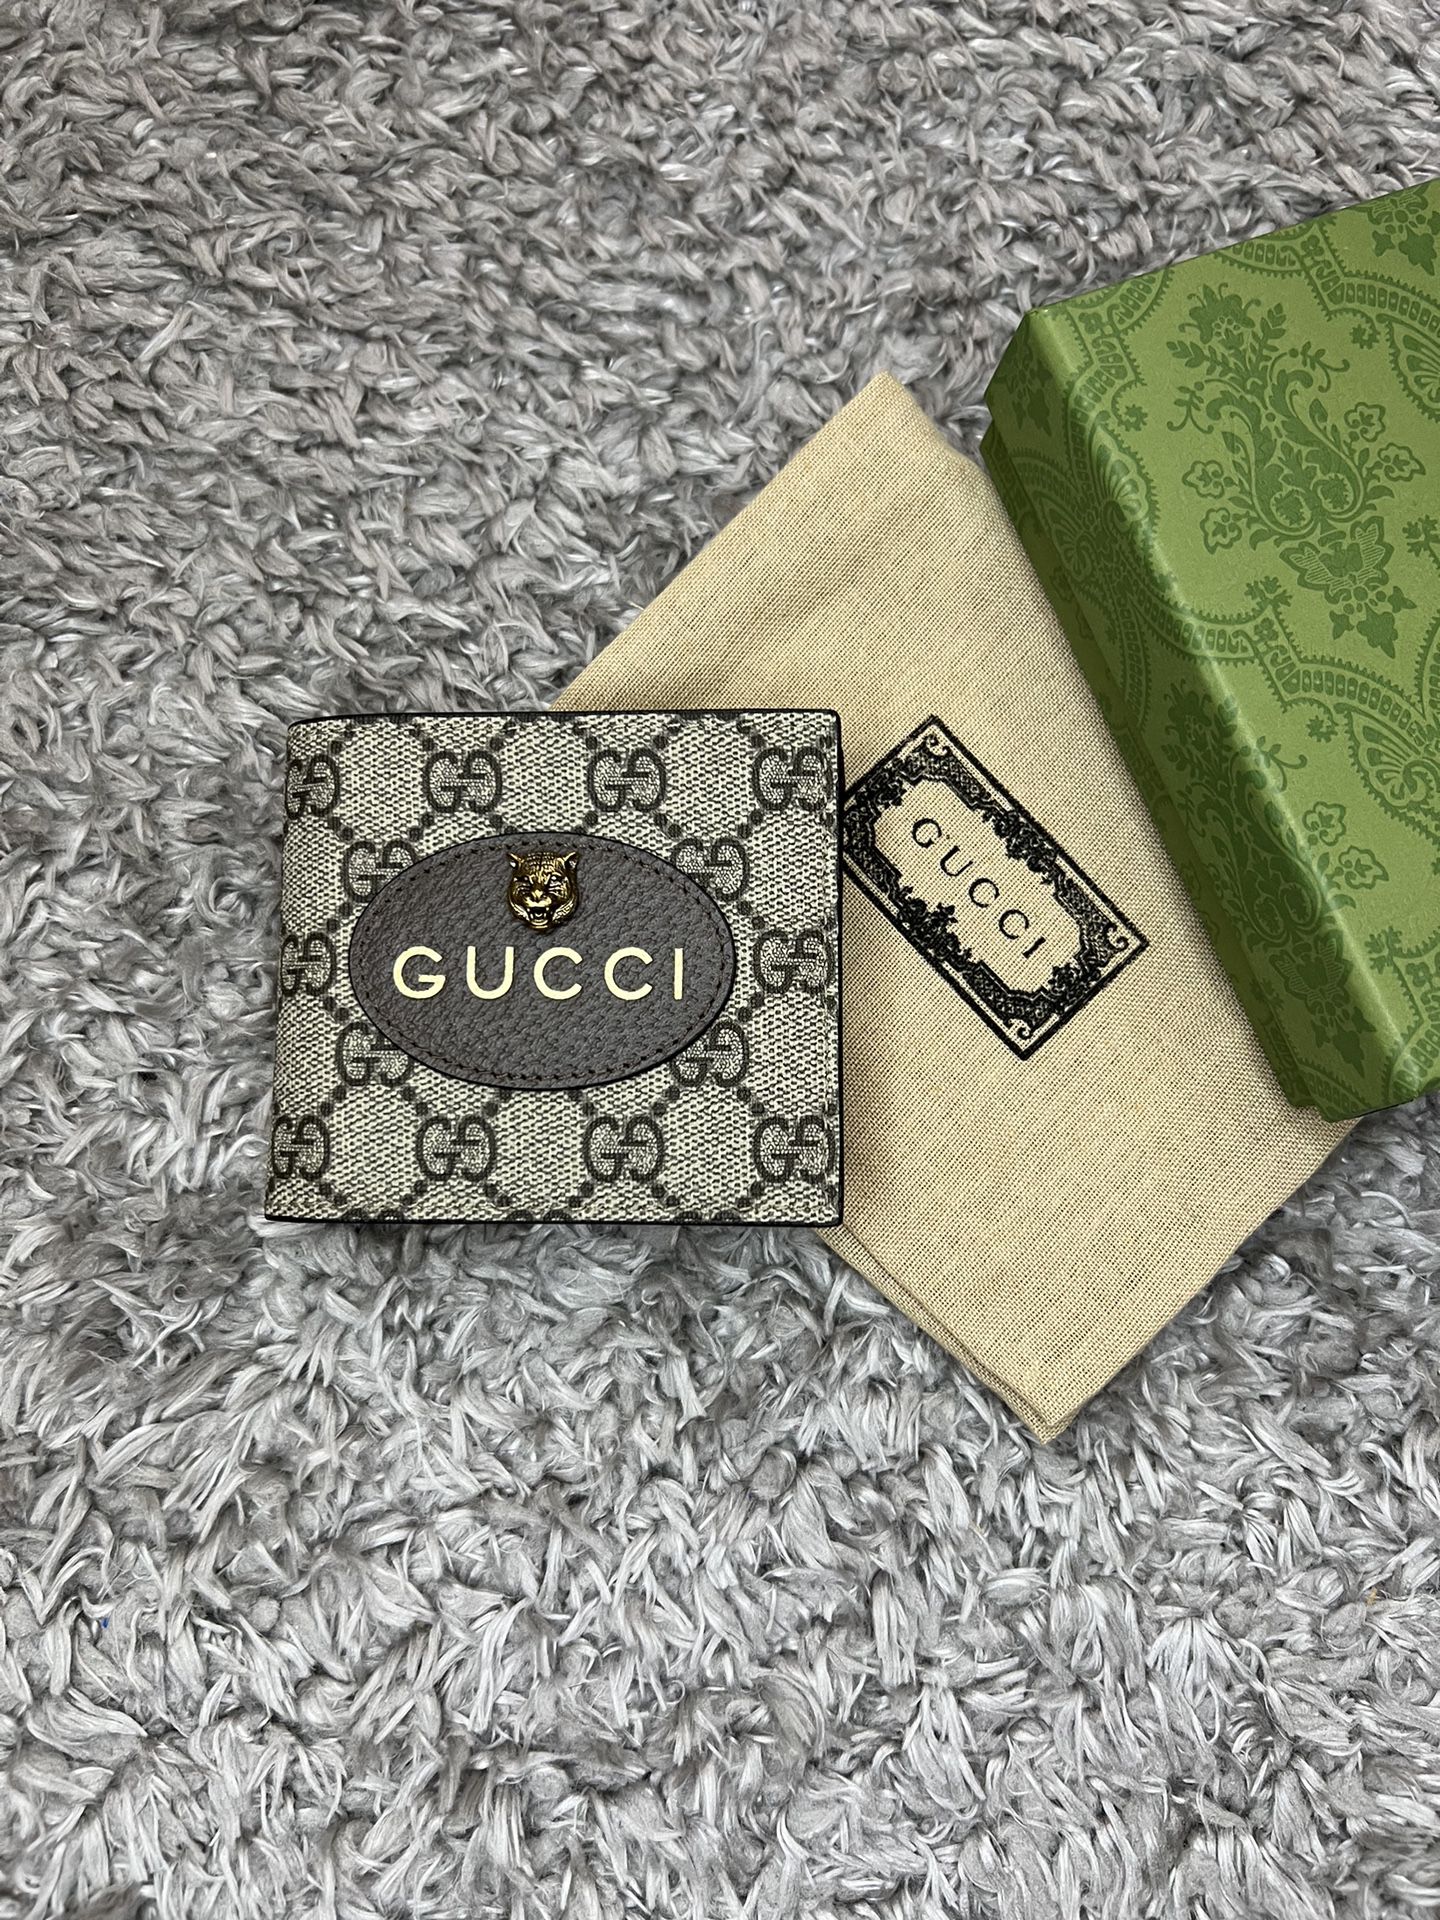 Gucci wallet 